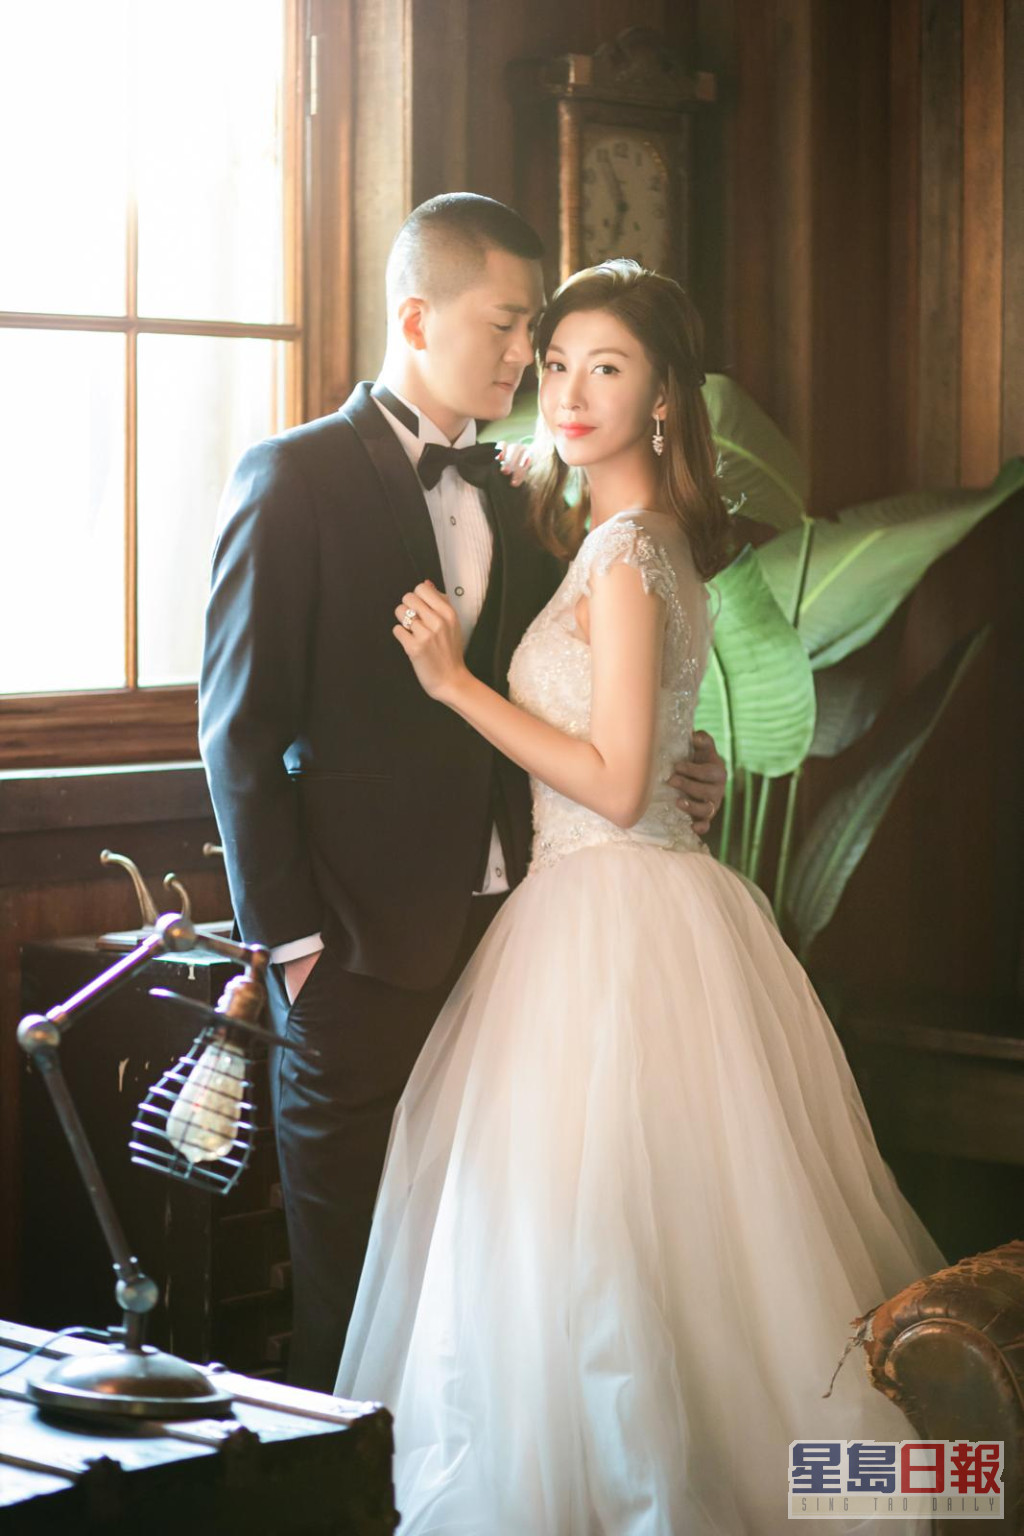 李彩華在2019年2月宣佈與從事鋼鐵生意的內地商人黃彥書（Eric）結婚。